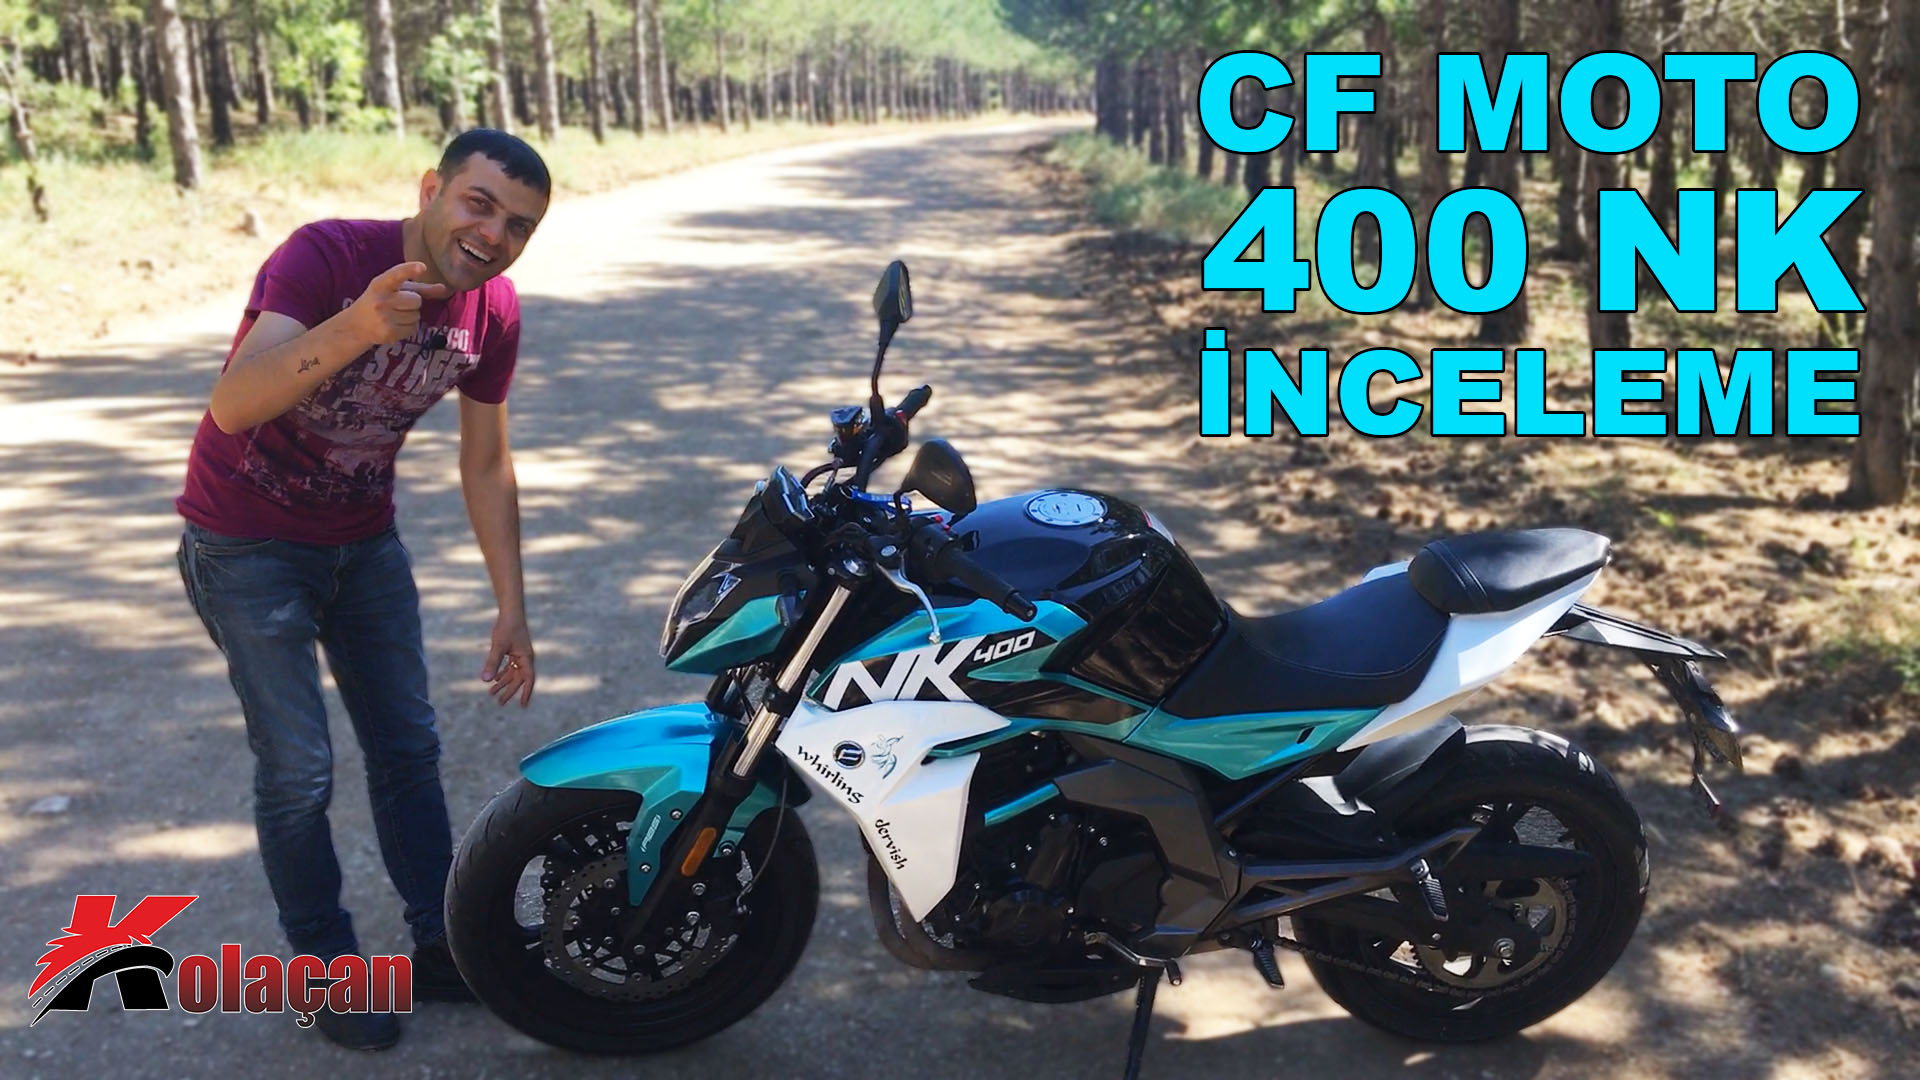 Cf Moto 400 NK Motosiklet İnceleme | Kullanıcı yorumu 2019